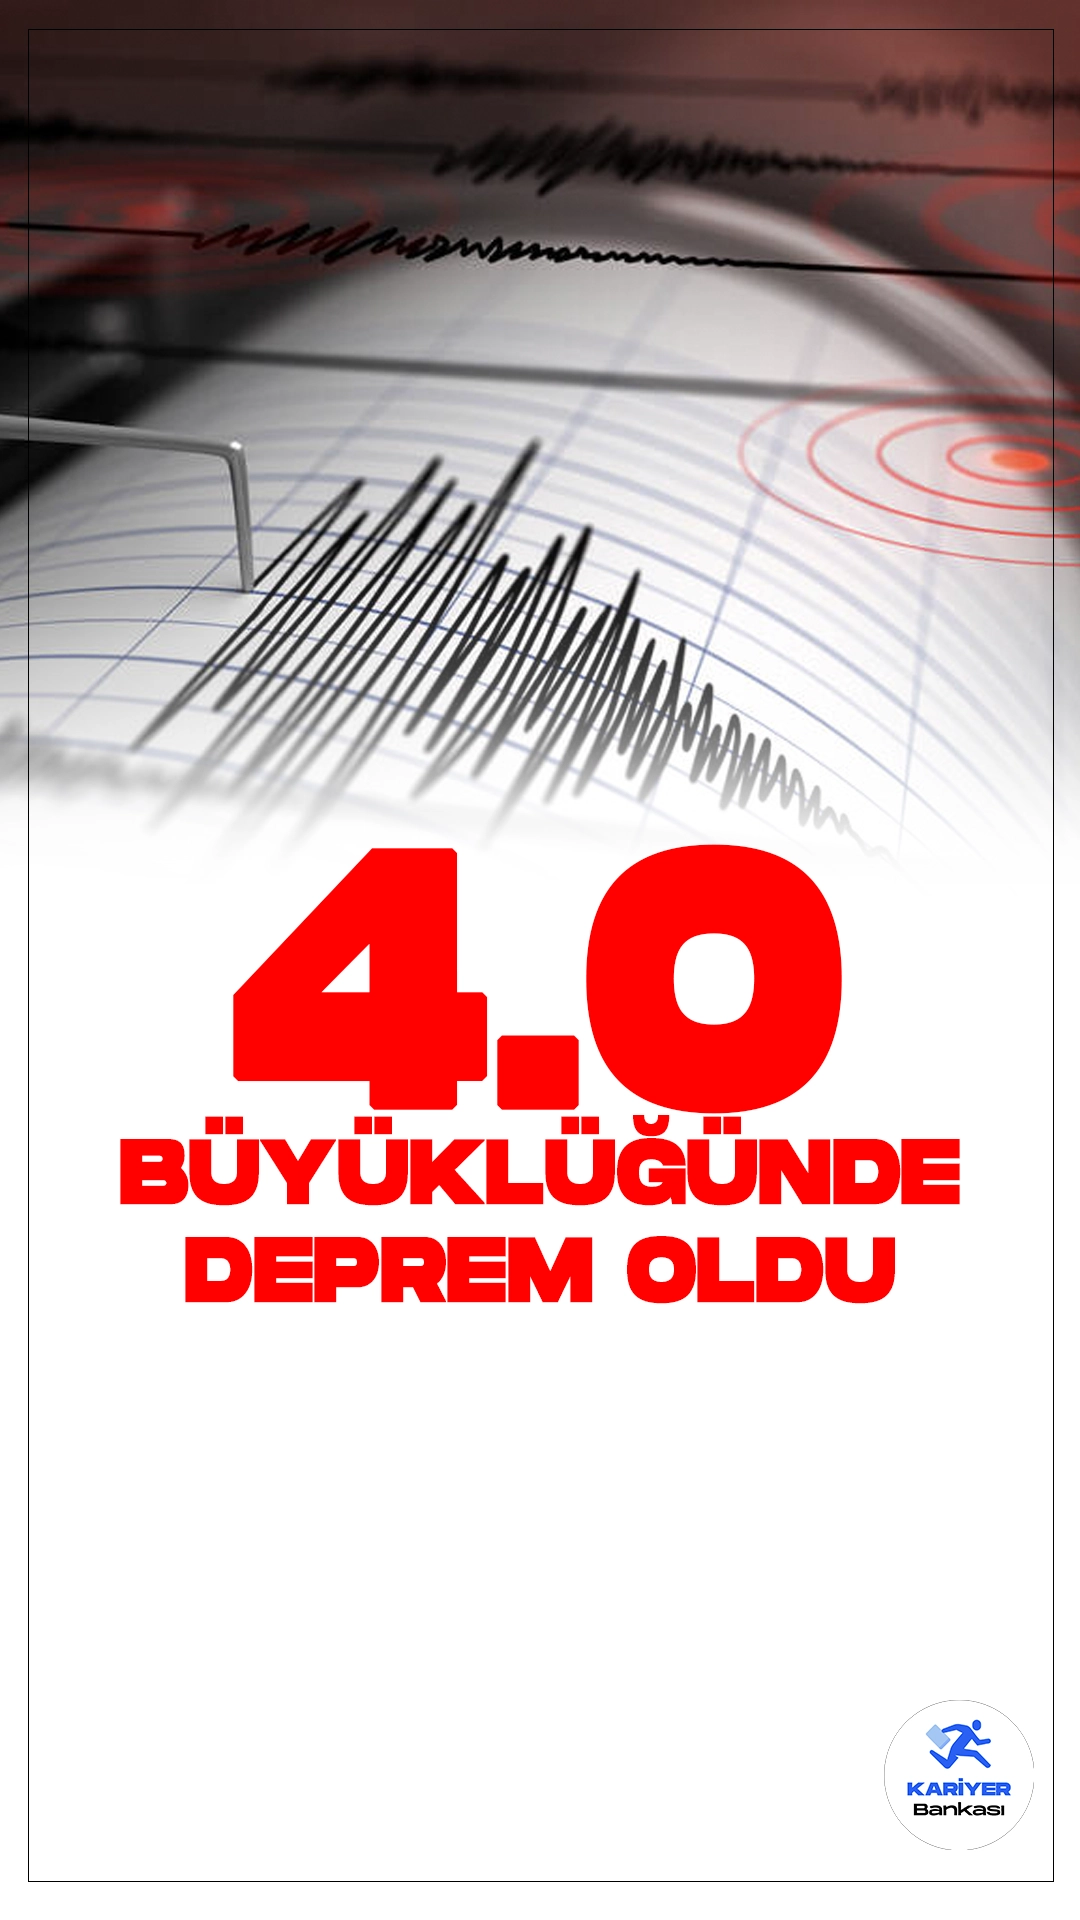 Muğla'da 4.0 Büyüklüğünde Deprem Oldu. İçişleri Bakanlığı Afet ve Acil Durum Yönetimi Başkanlığı Deprem Dairesi tarafından yayımlanan son dakika verilerine göre, Muğla'nın Datça ilesinde 4.0 büyüklüğünde deprem meydana geldiği aktarıldı.